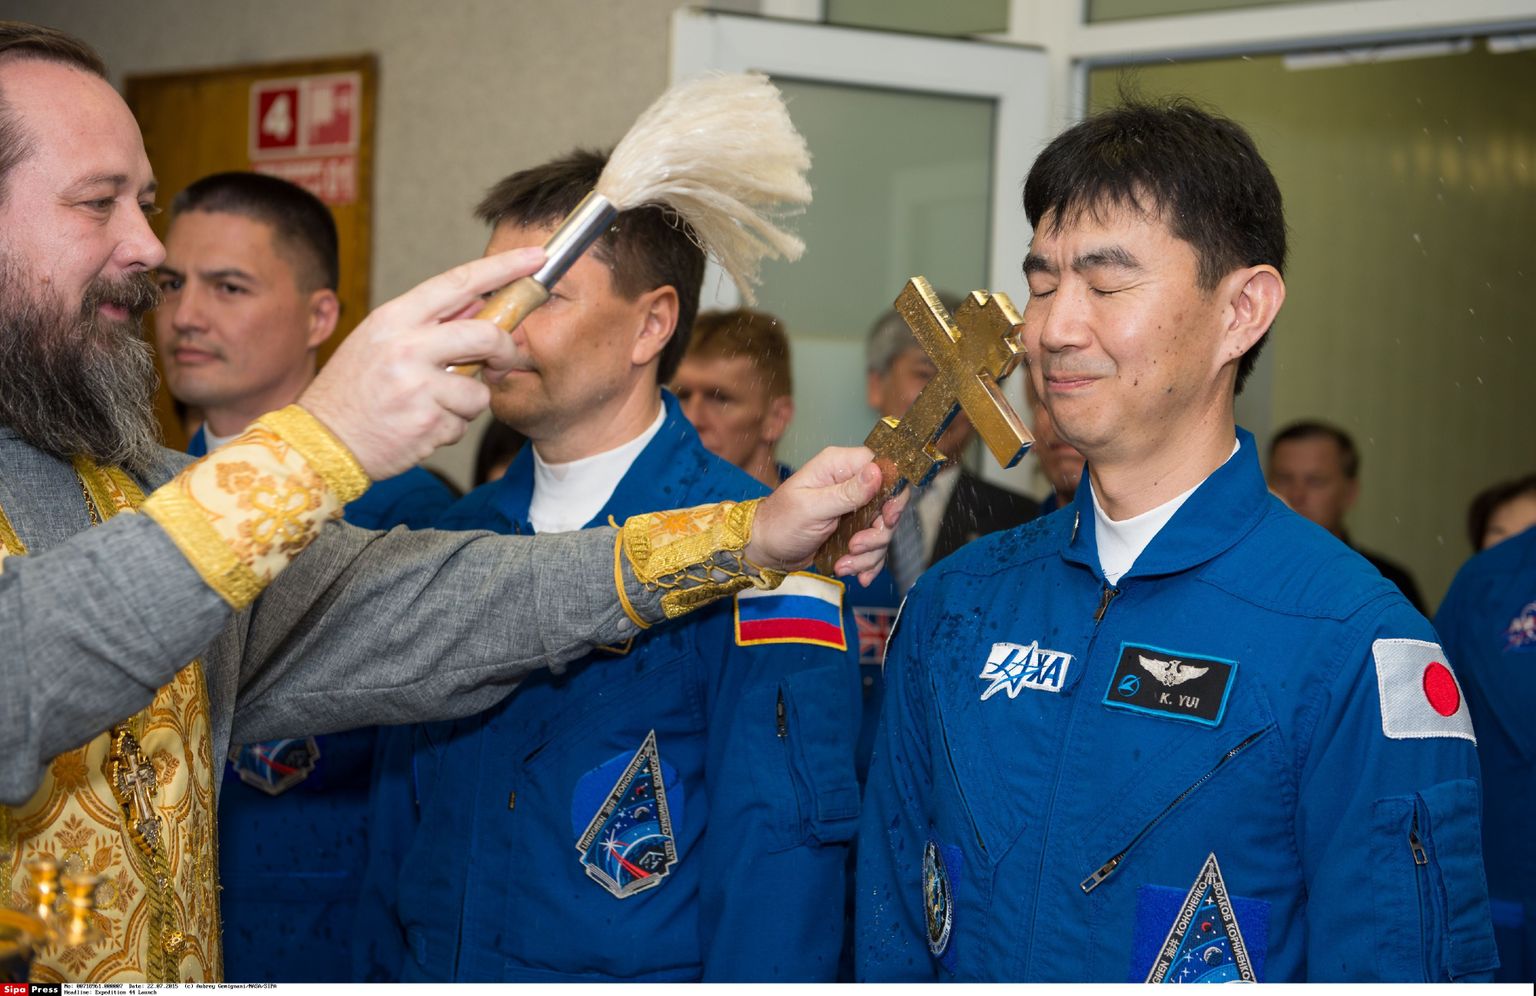 Vene õigeusuvaimulik õnnistamas kolmeliikmelist meeskonda, kes jõudis eile rahvusvahelisse kosmosejaama.